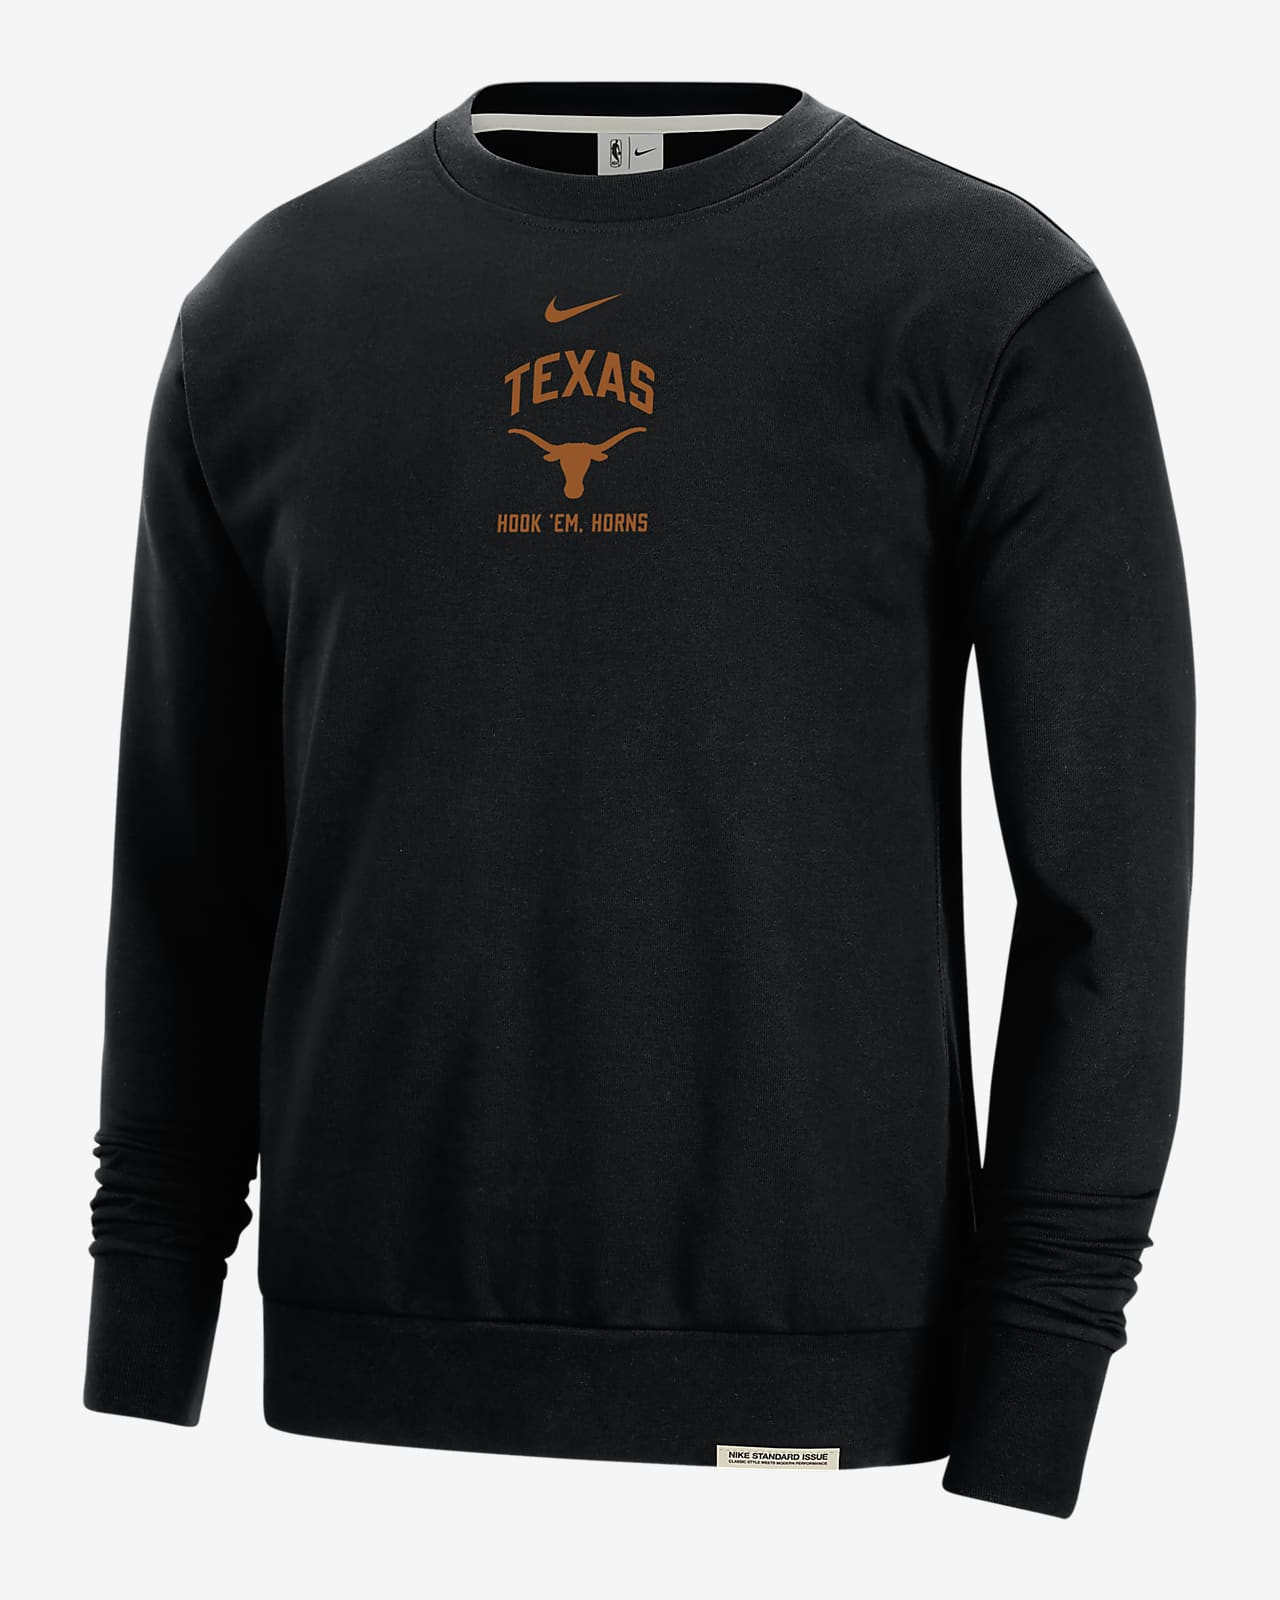 Texas Standard Issue Men's Nike College Fleece Crew-Neck Sweatshirt